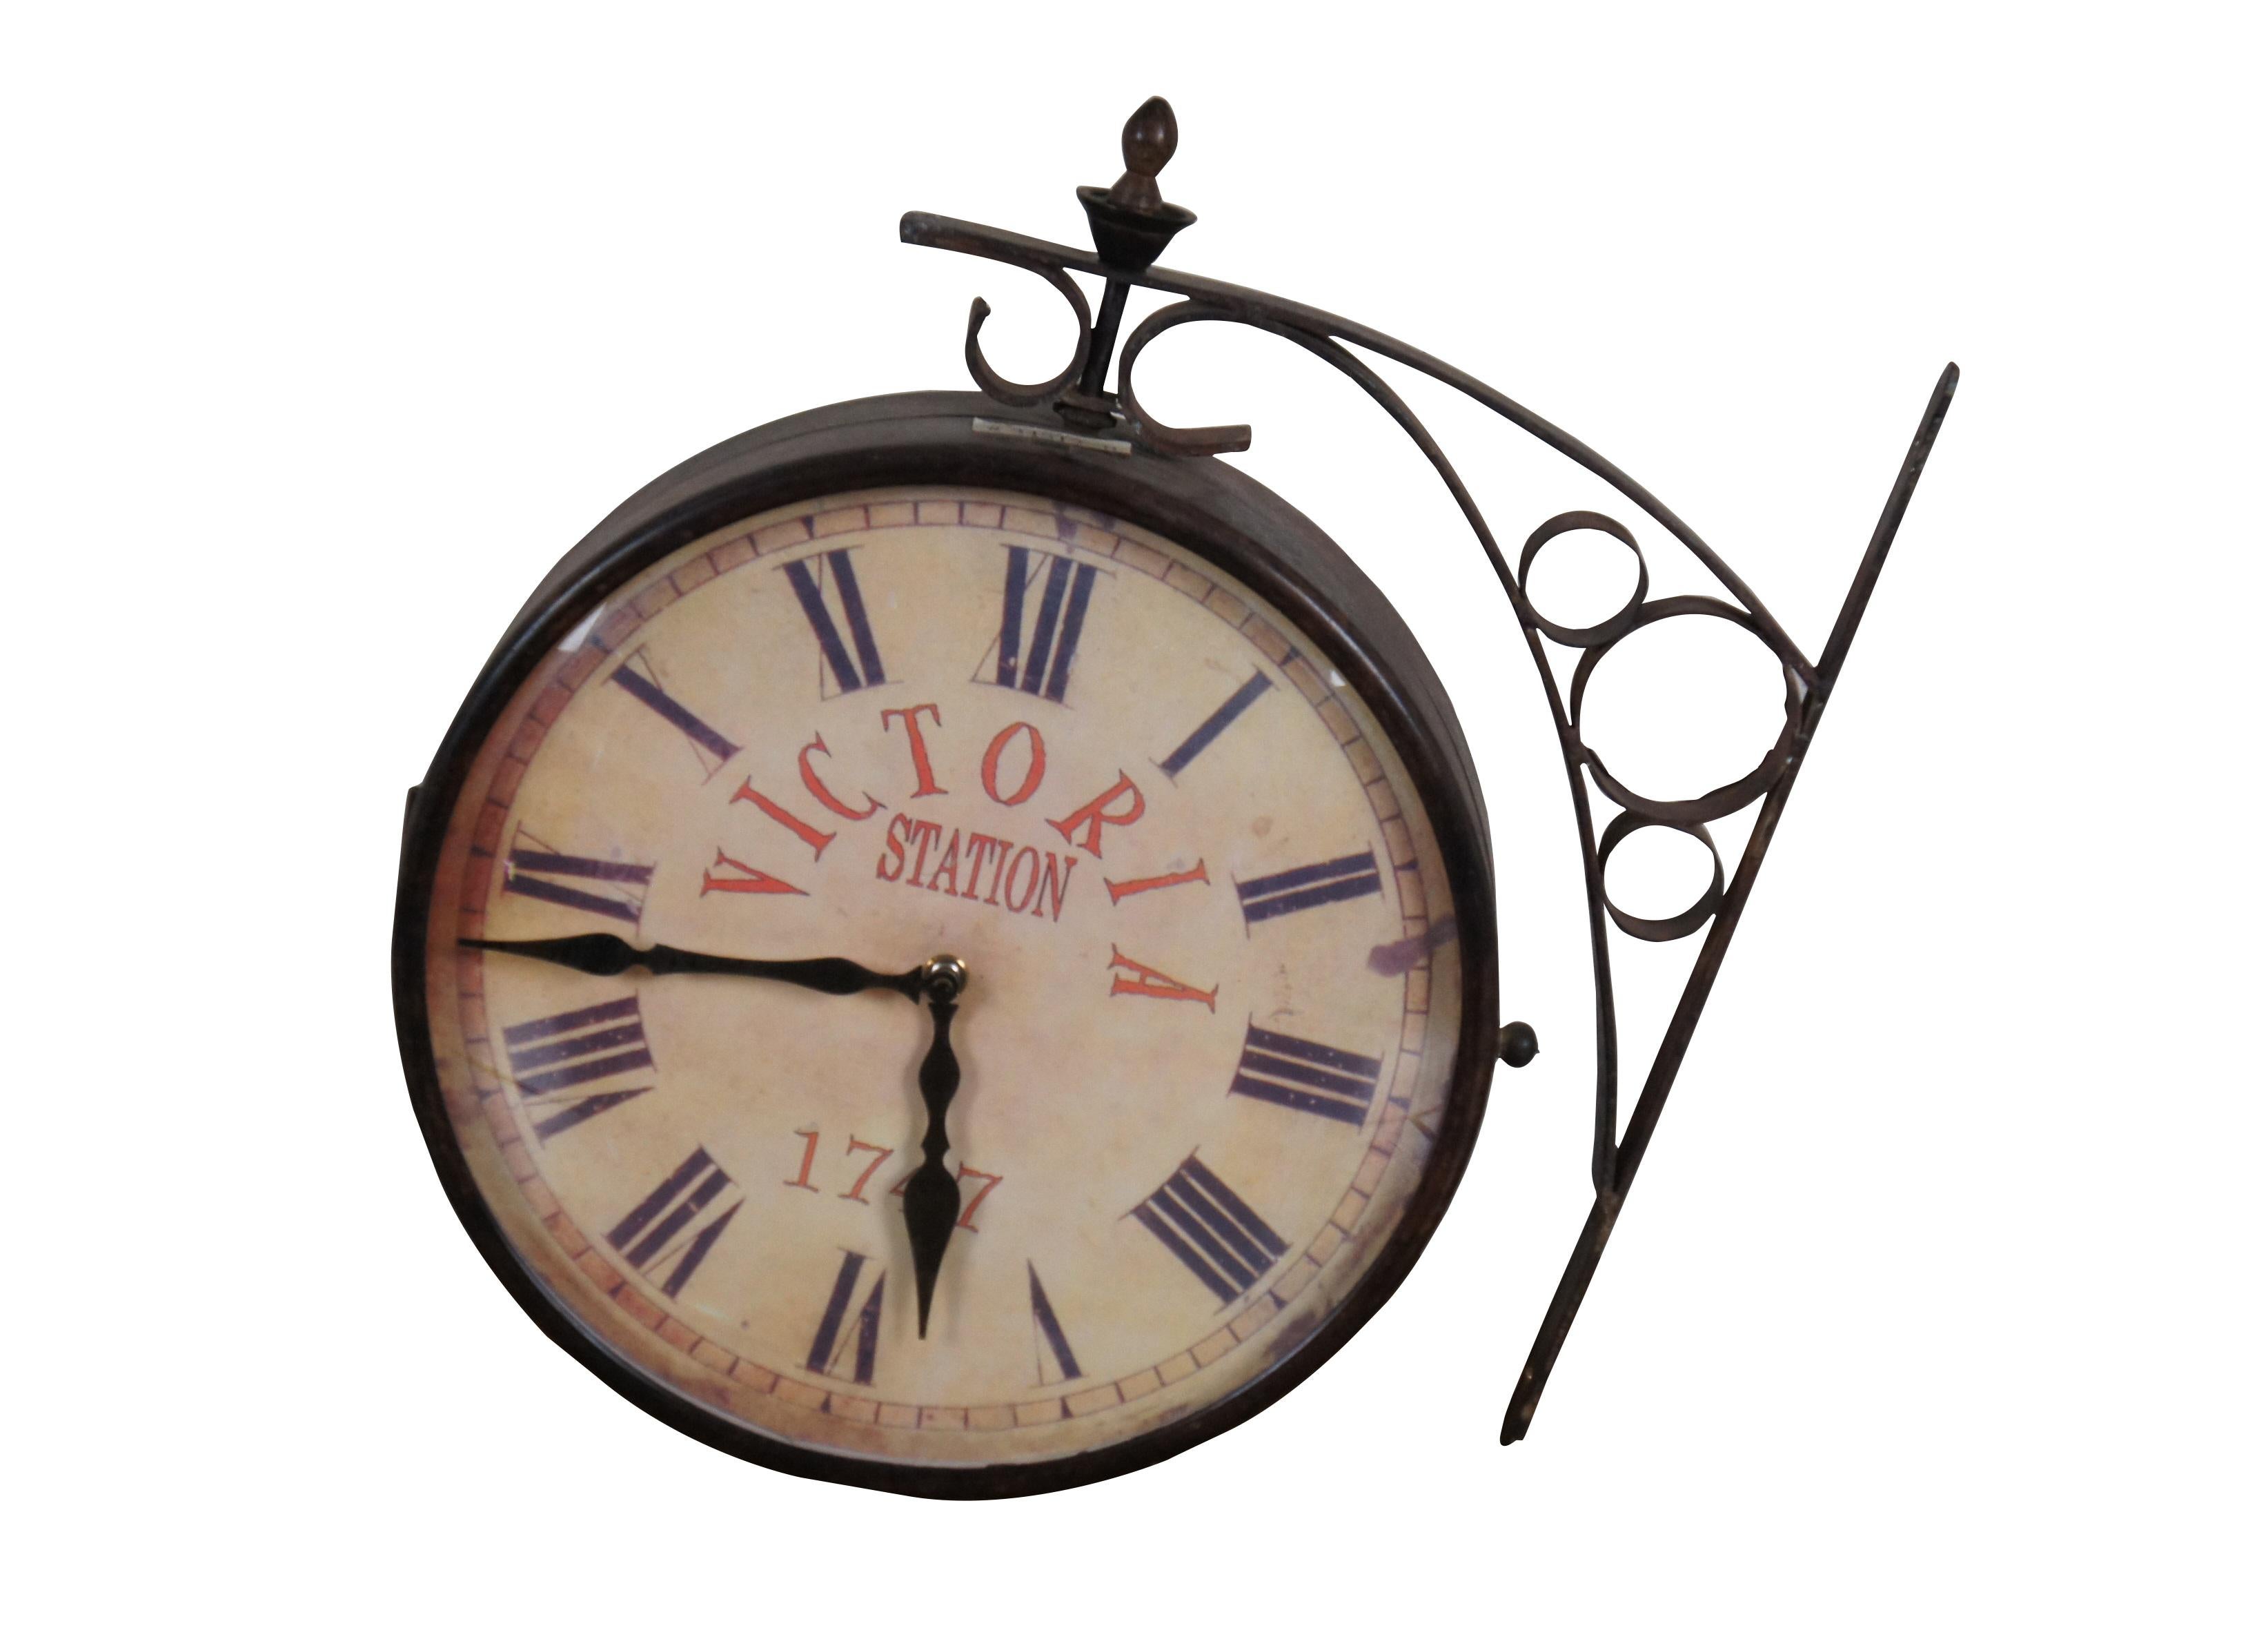 Horloge ferroviaire double face de la fin du XXe siècle, inspirée de la célèbre horloge de la gare de Victoria, à Londres. Support mural en métal forgé et boîtier en finition bronze foncé. Face imprimée de 12 pouces de diamètre, avec faux relief,